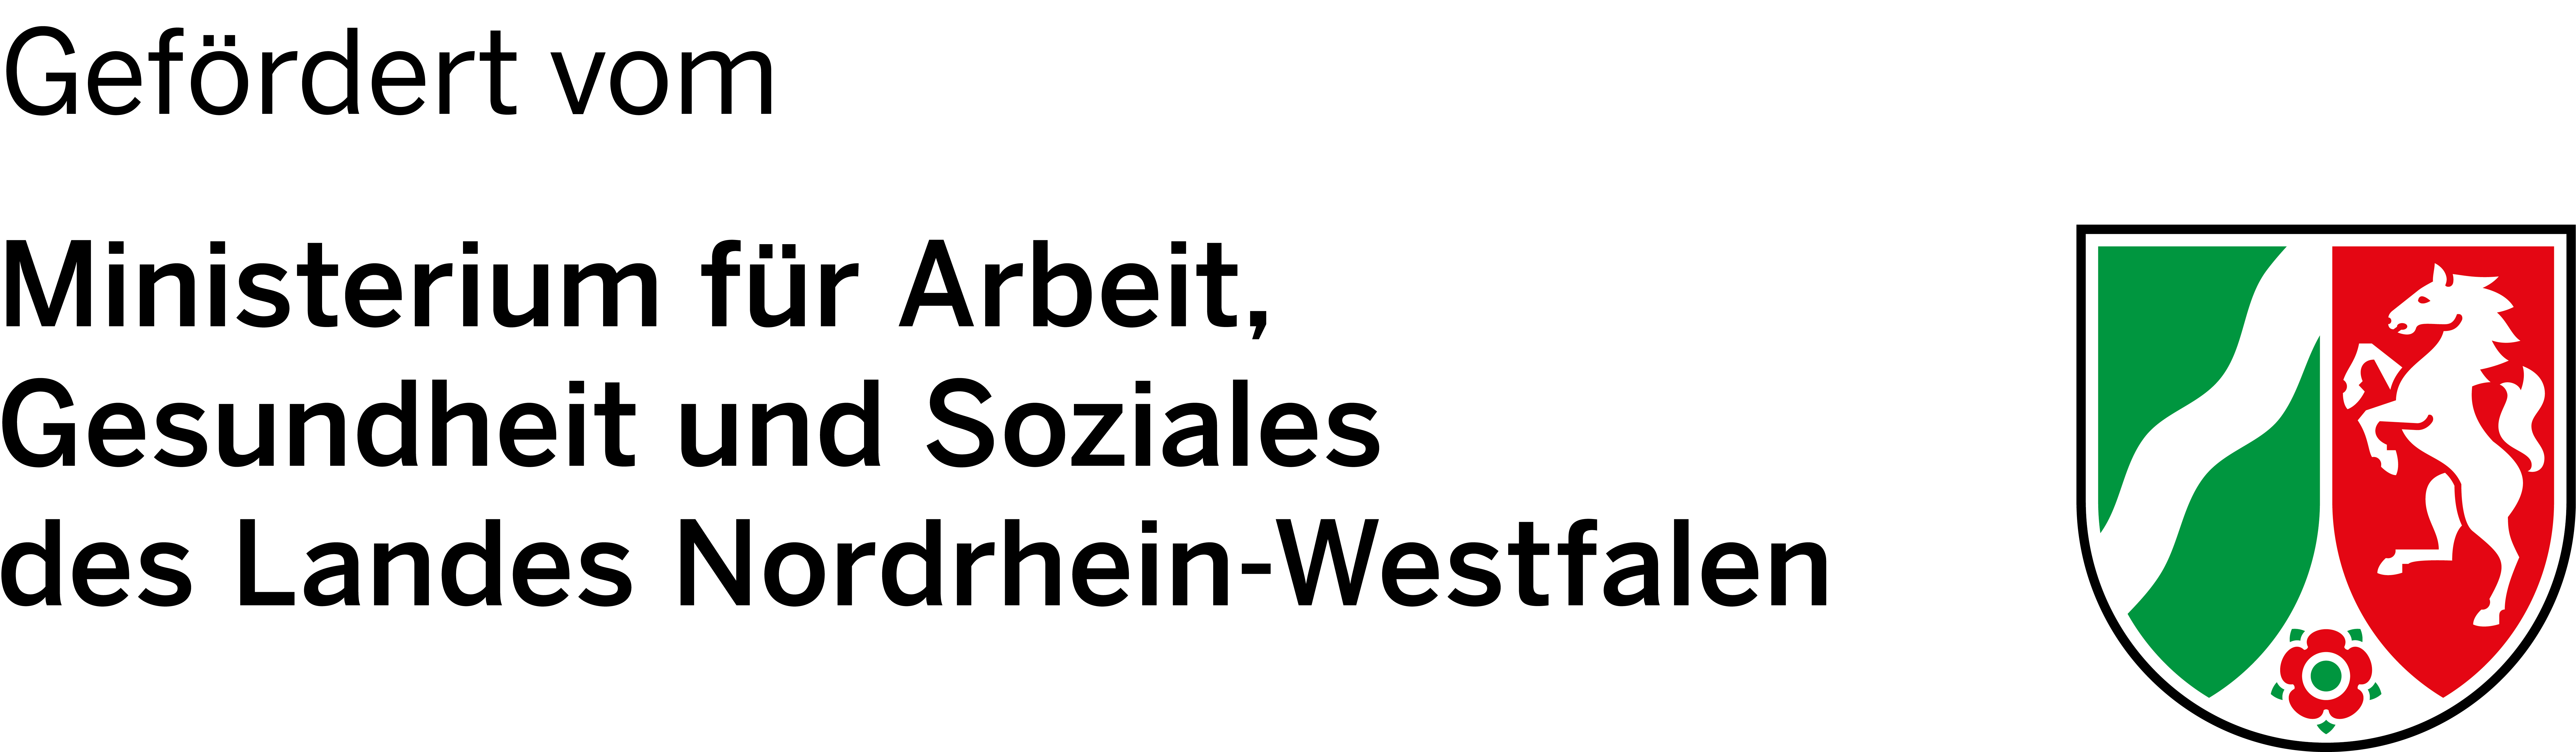 Das Logo des Ministerium für Arbeit, Gesundheit und Soziales des Landes Nordrhein-Westfalen zeigt das Wappen von NRW.